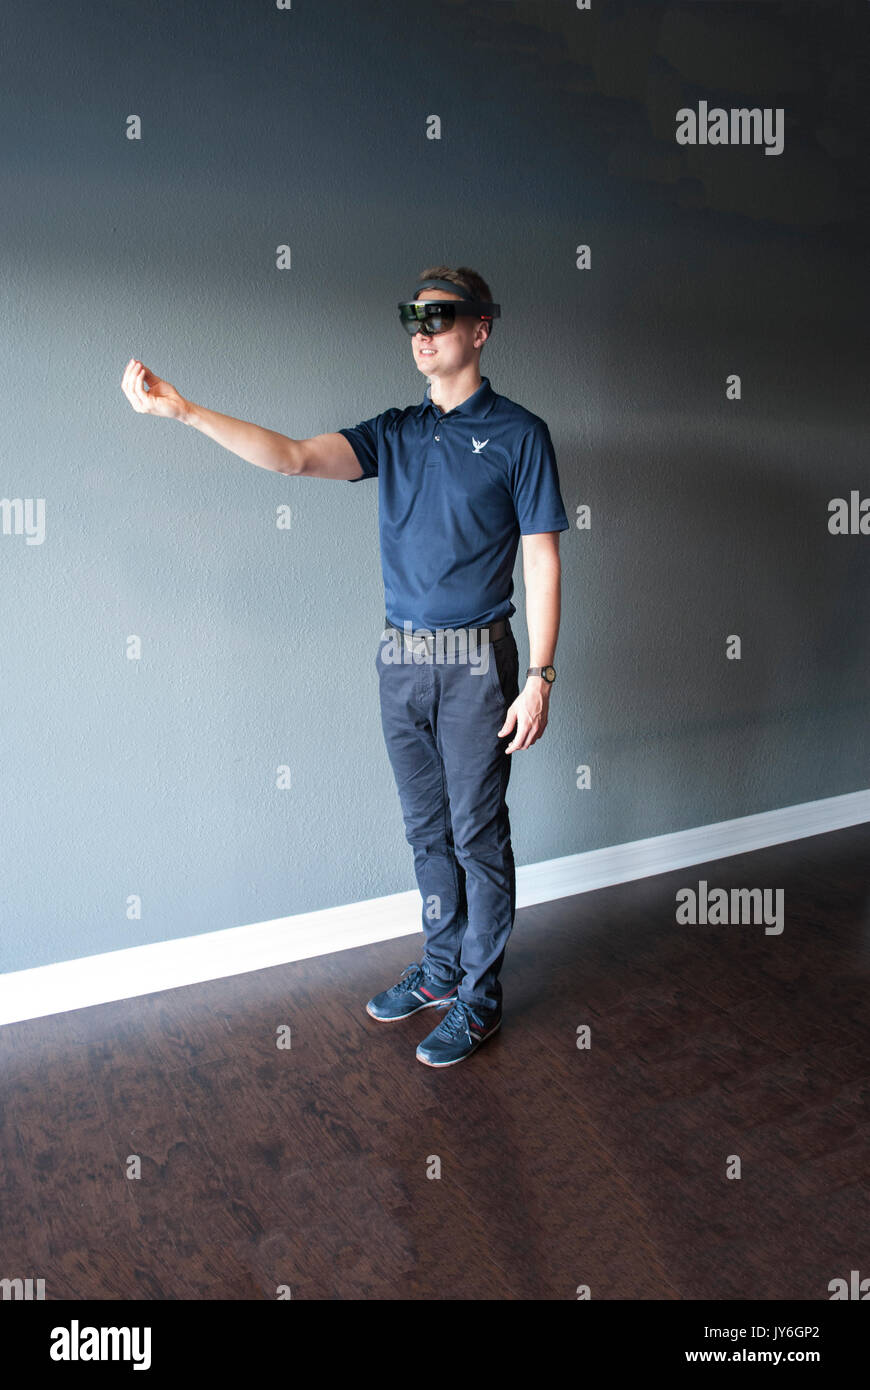 Junge Ingenieur mit holographischen Headset Erstellen einer virtuellen Umgebung mit speziellen Gesten - Blick Stockfoto